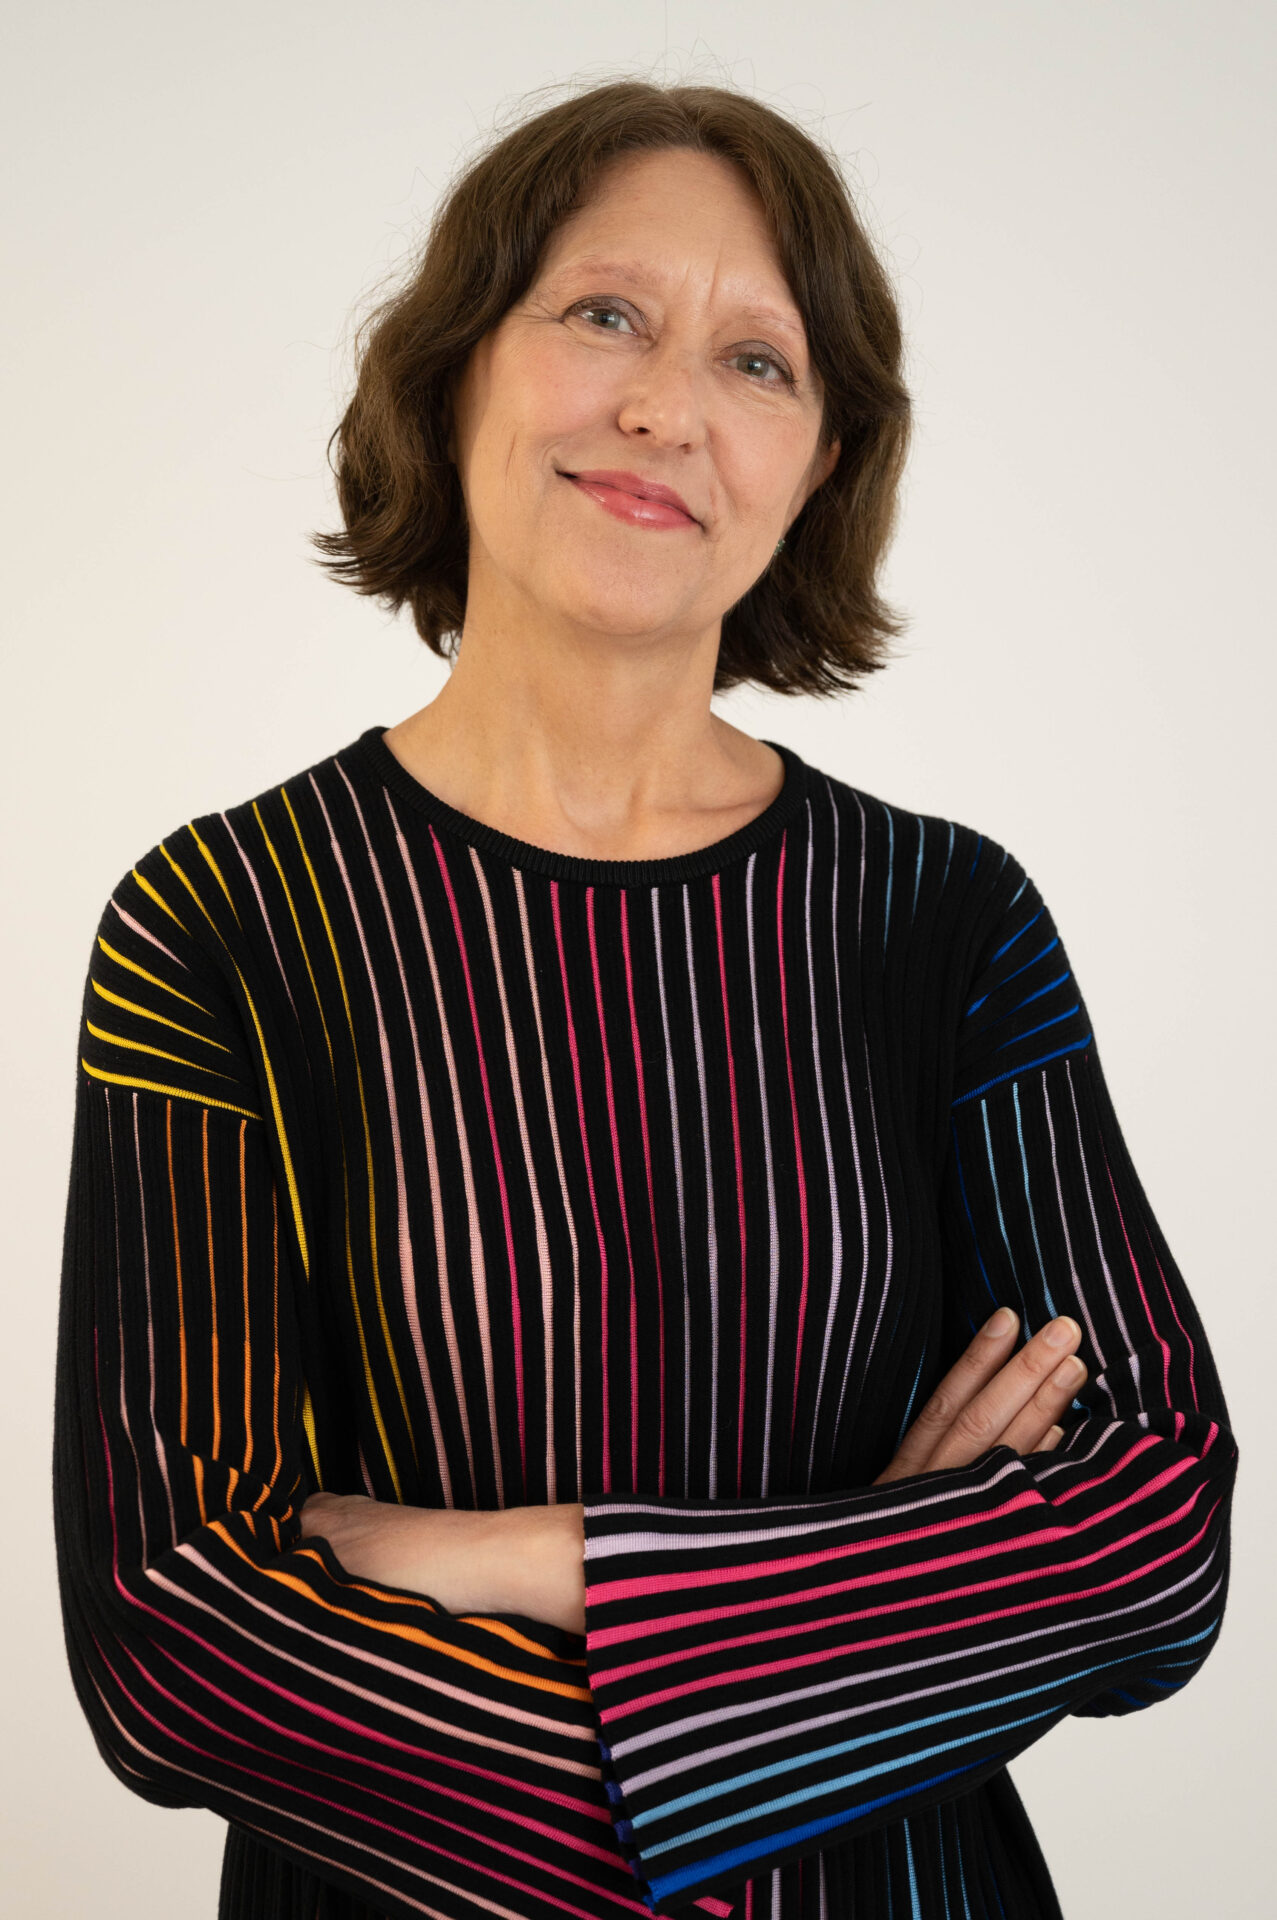 Victoria Capella-Directora RRHH Corporativa Grupo Piñero